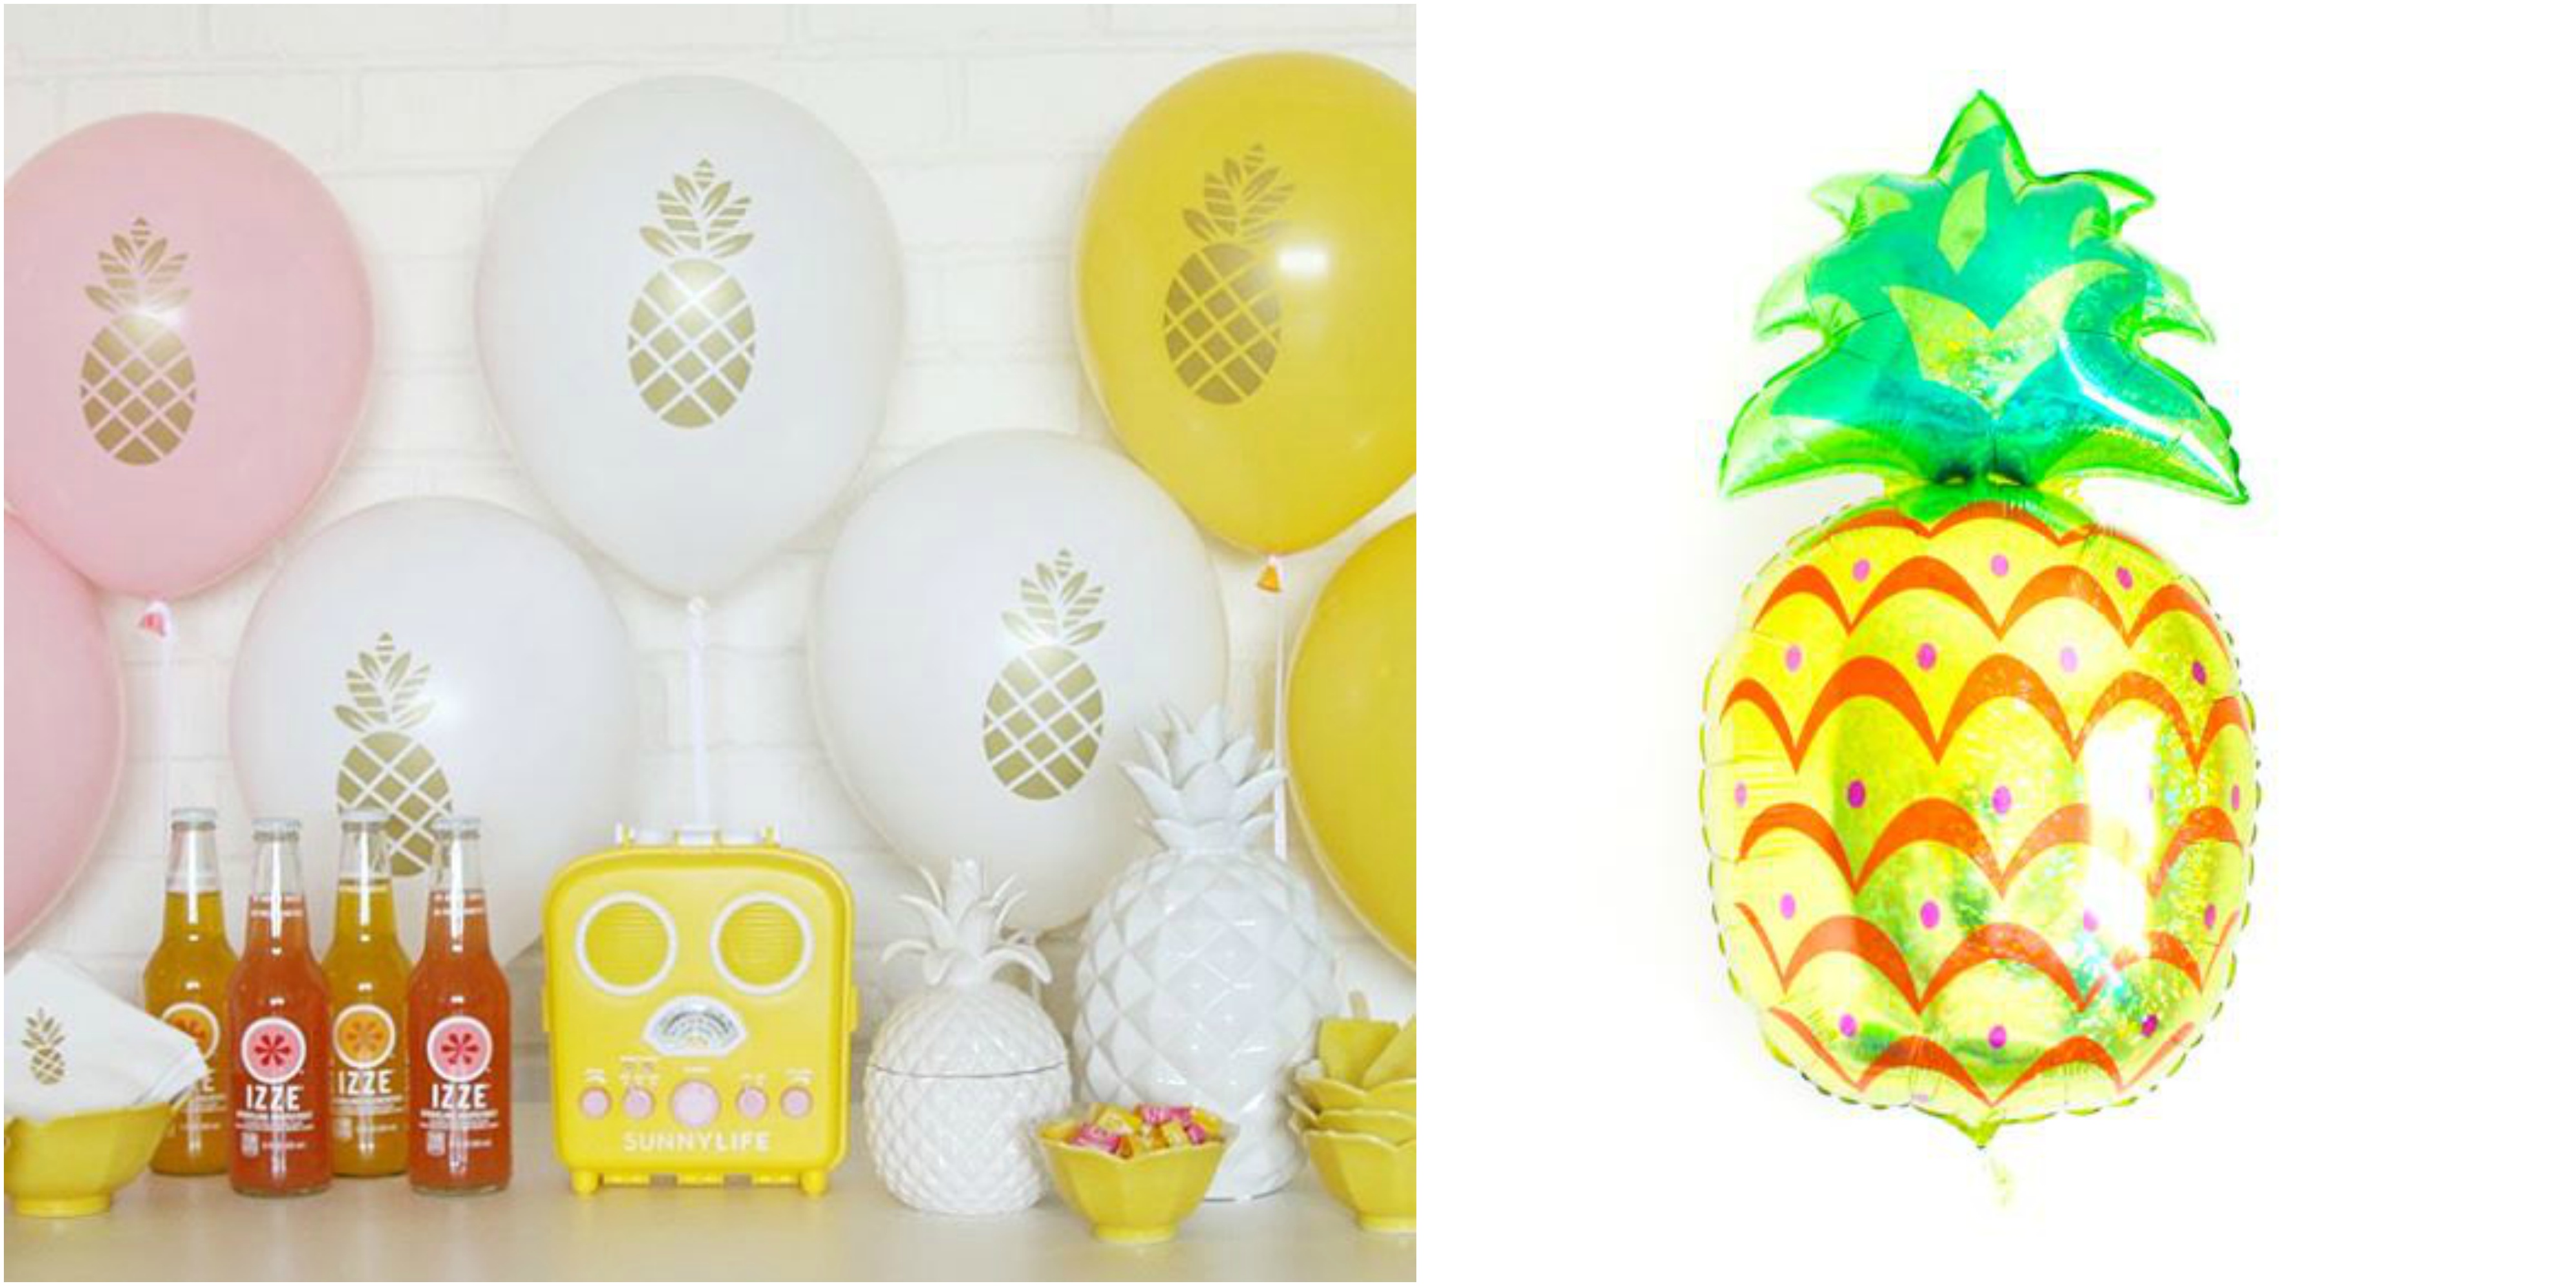 Pineapple balloon collage